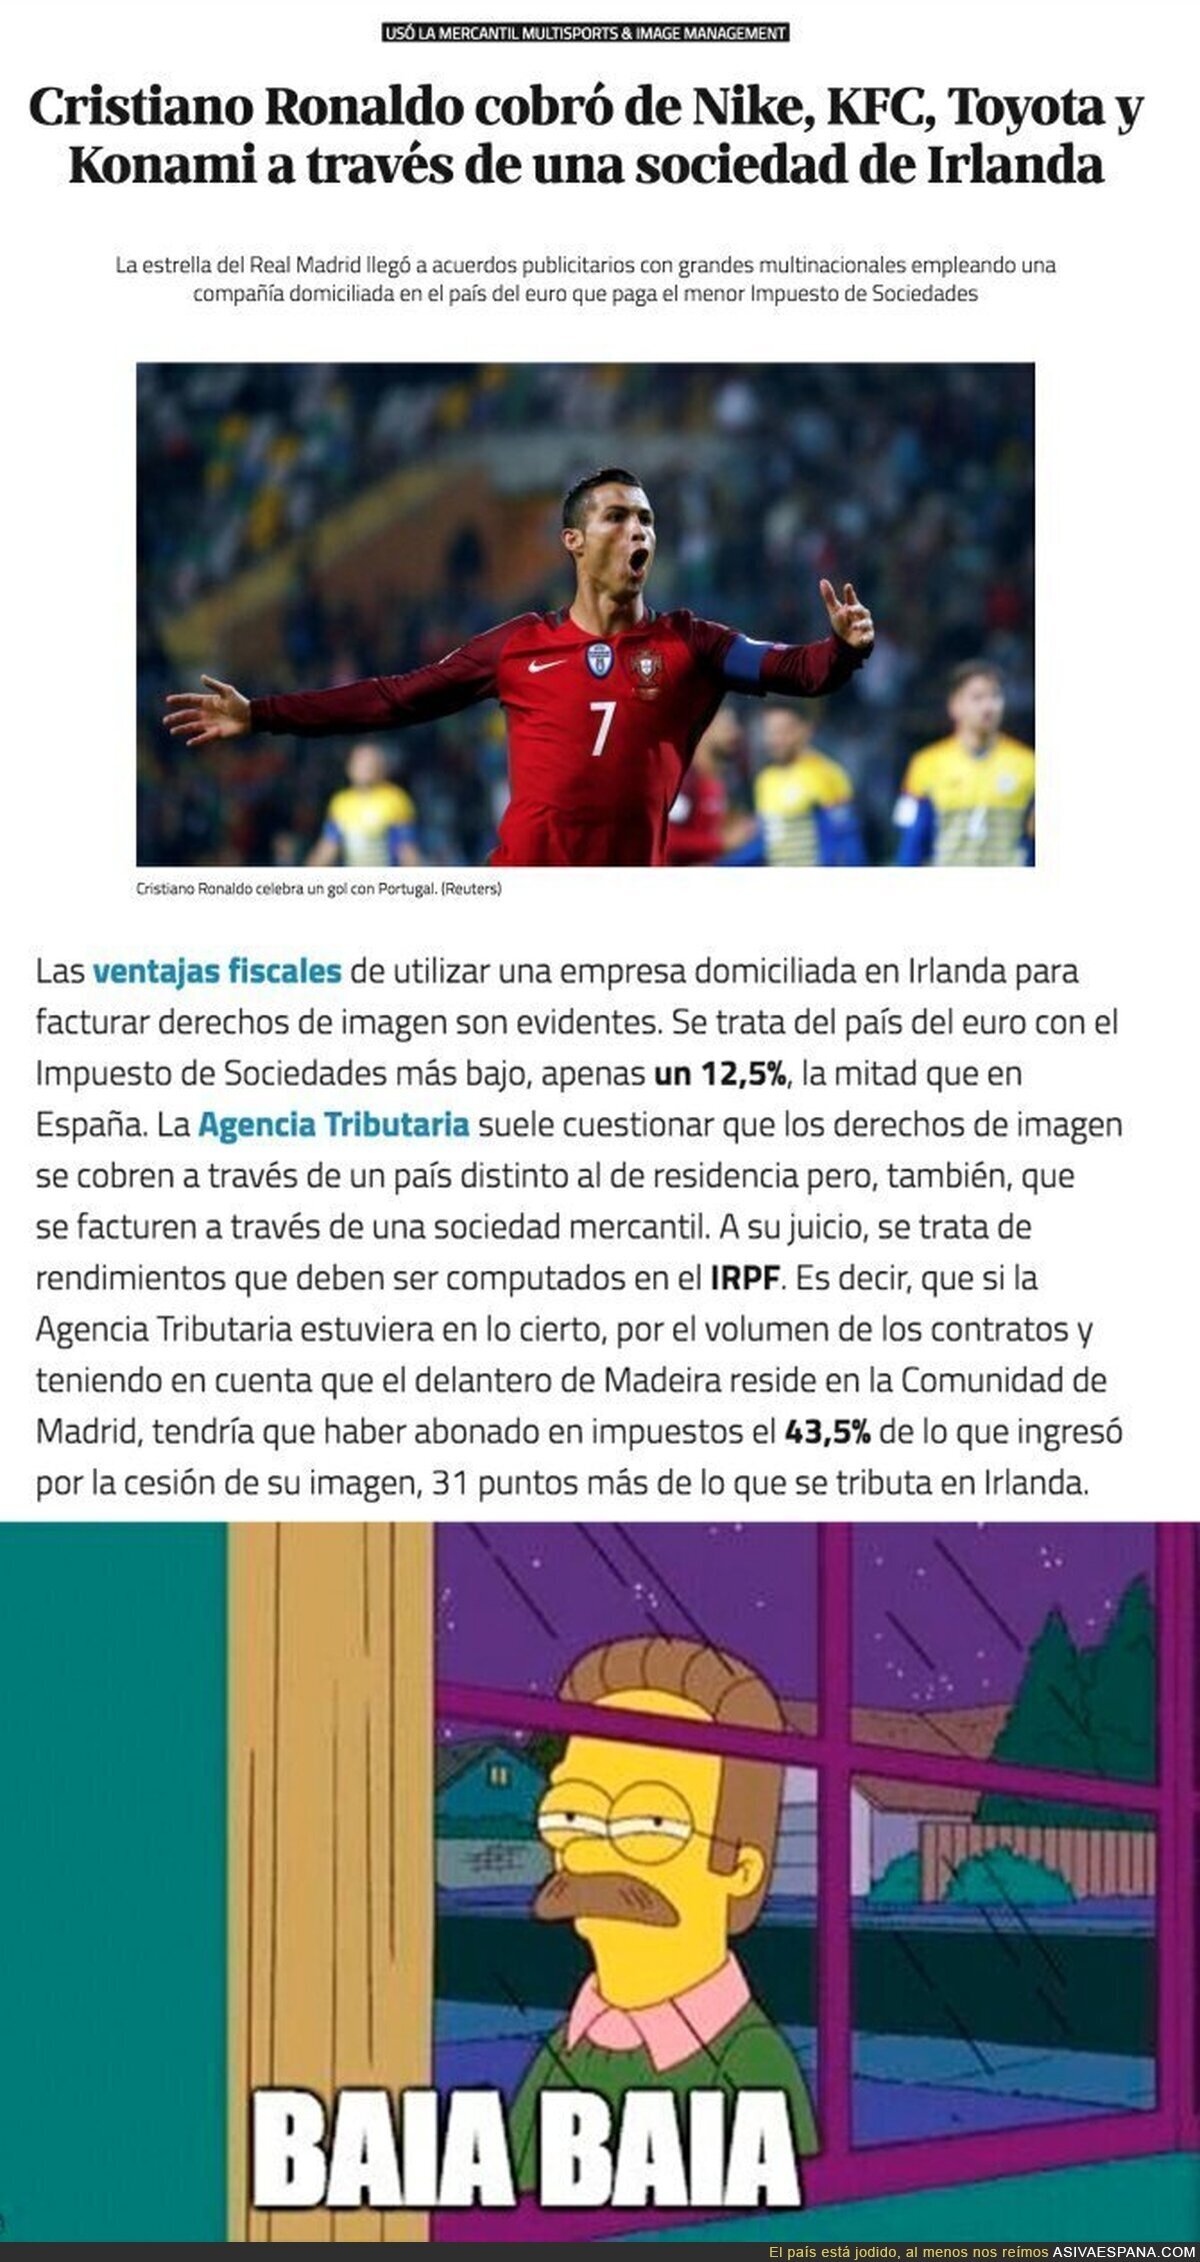 Cristiano Ronaldo defrauda a la Hacienda española cobrando en una sociedad de Irlanda